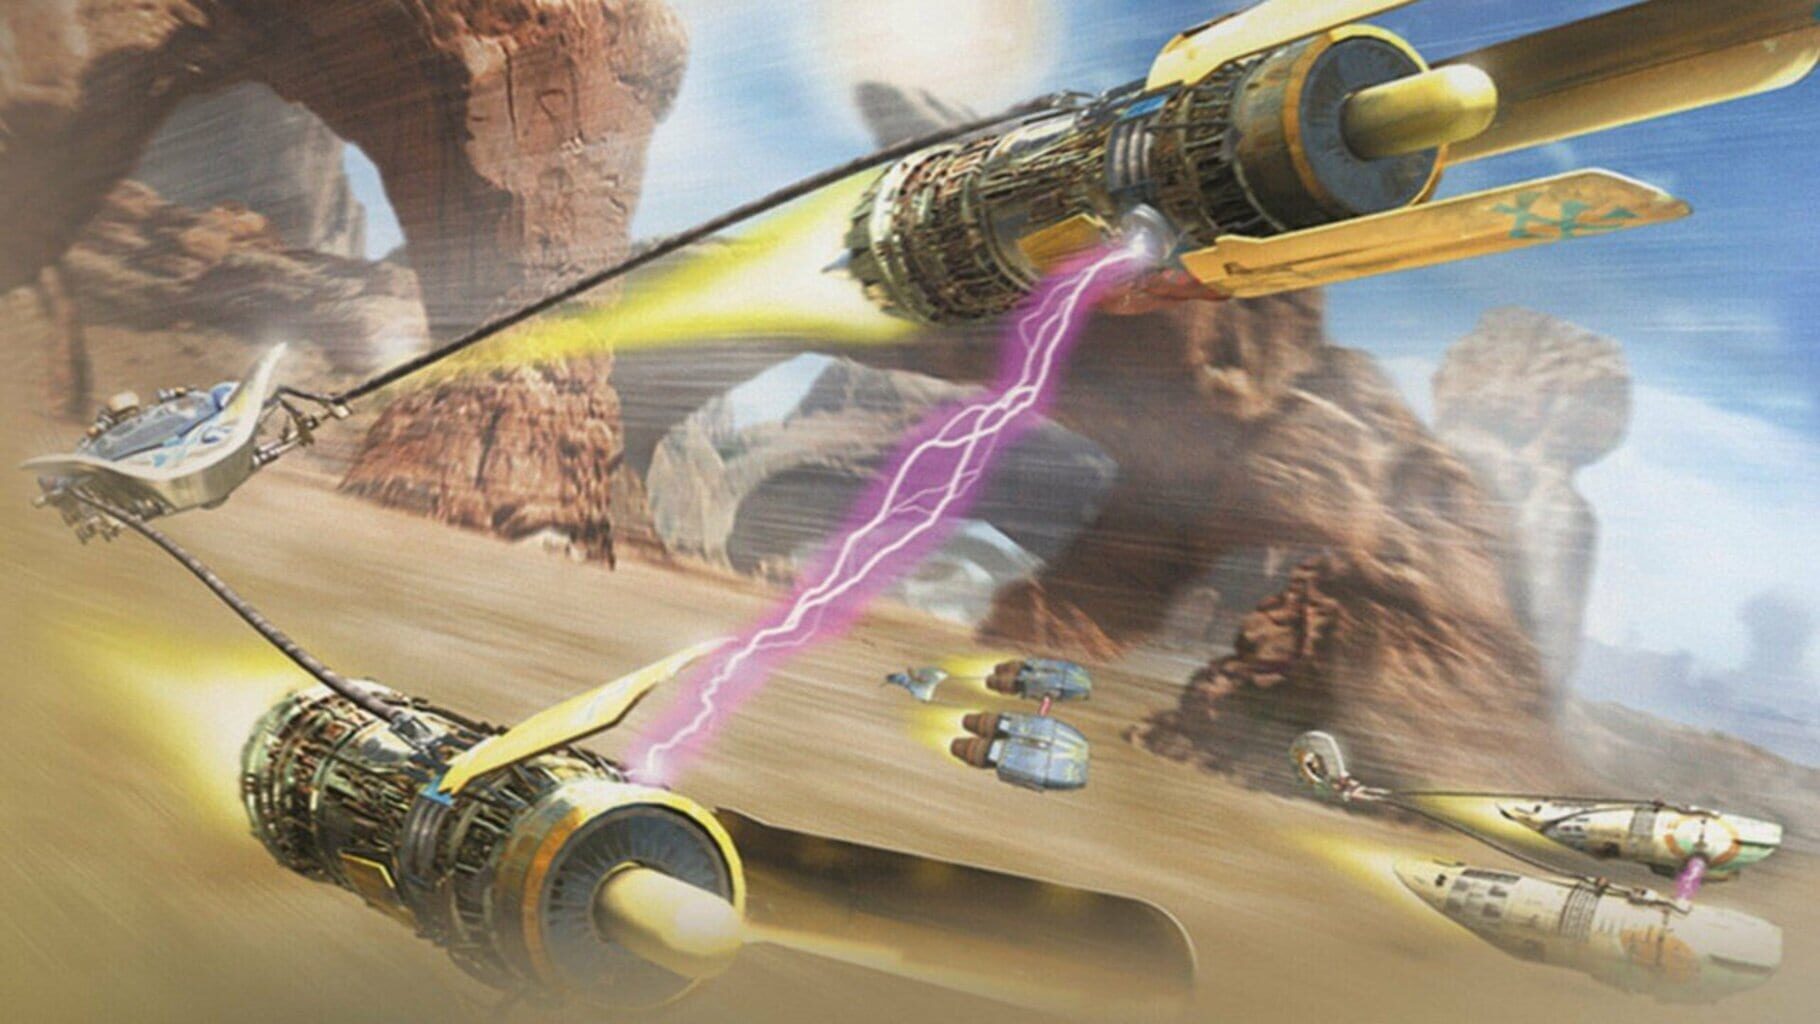 Star Wars: Episode I - Racer artwork